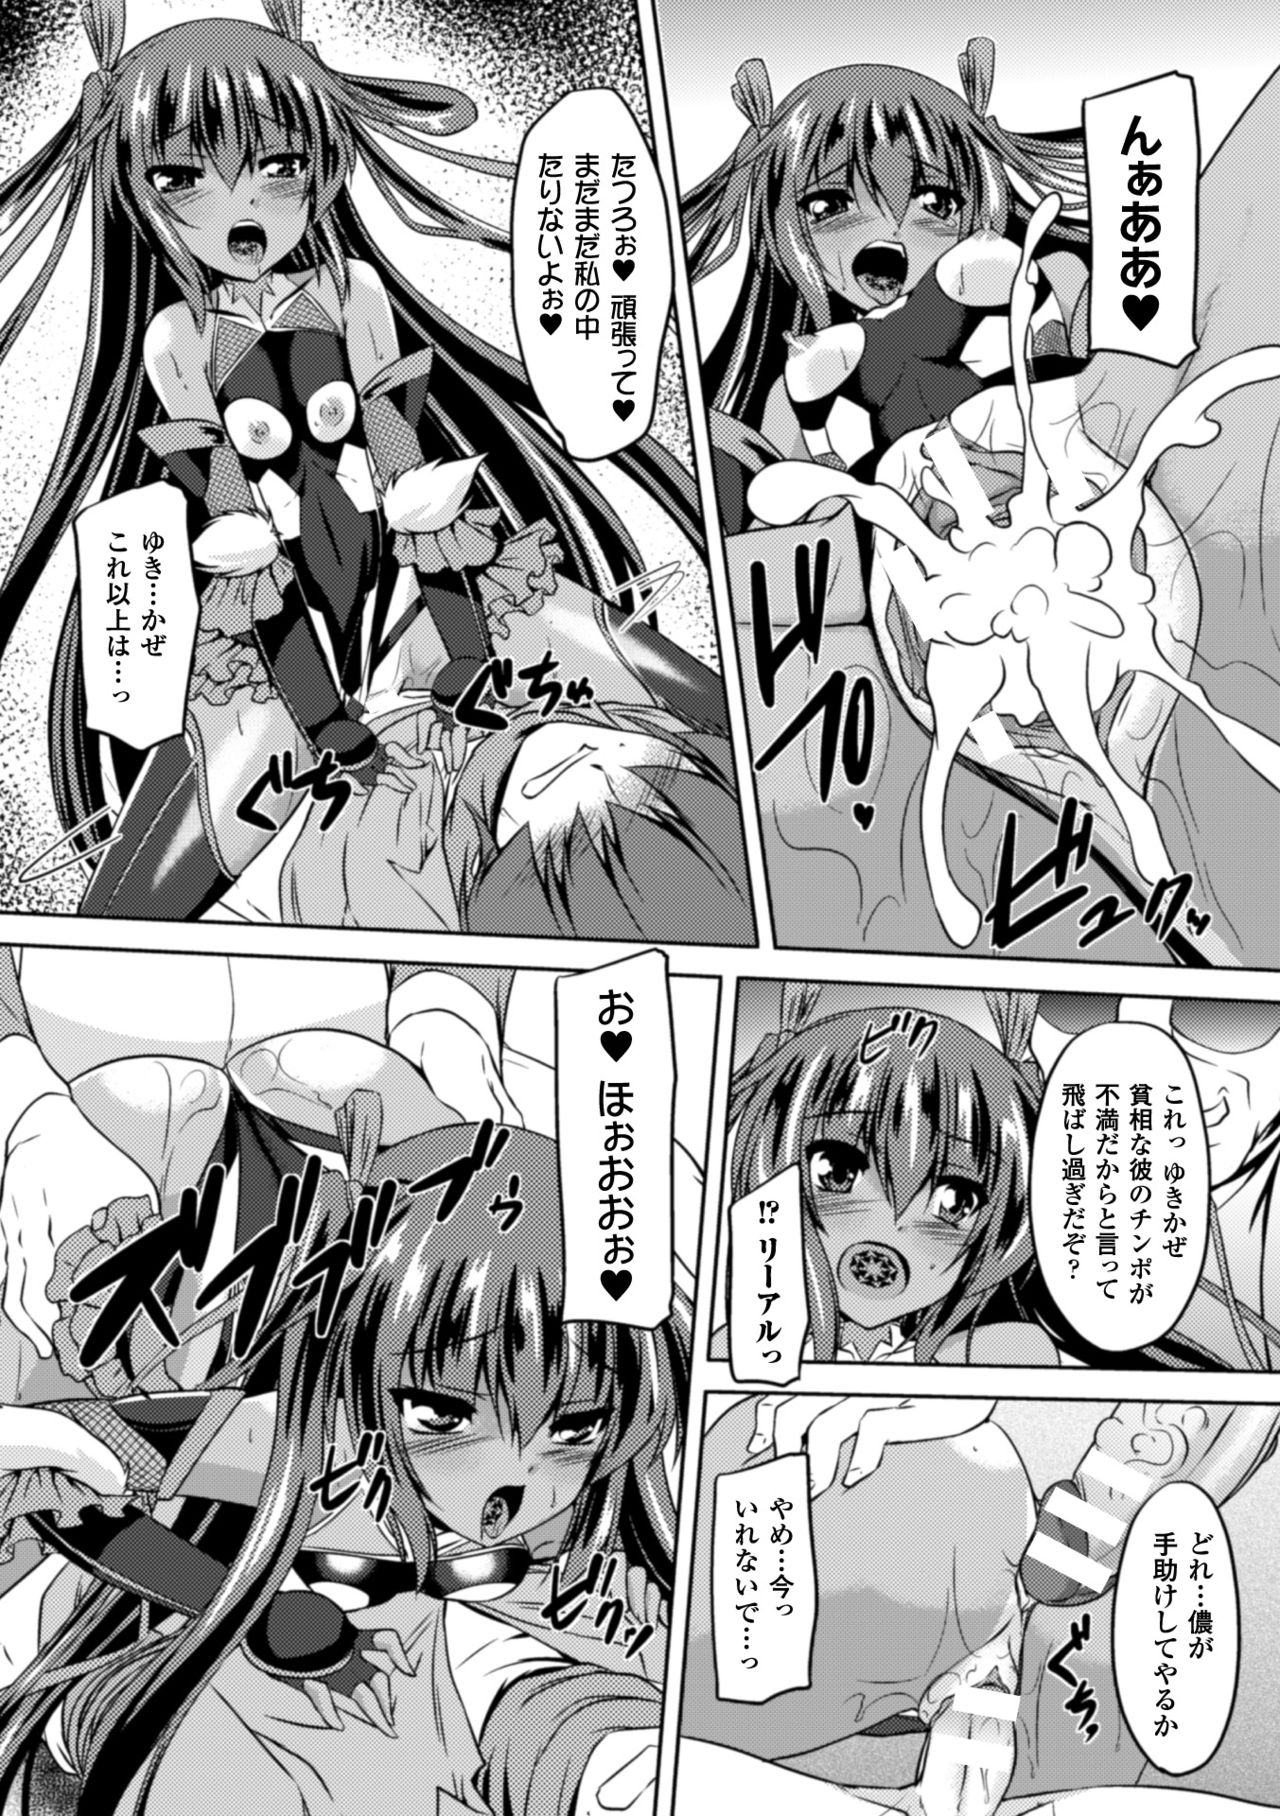 [Anthology] Seigi no Heroine Kangoku File Vol. 2 [Digital] page 13 full